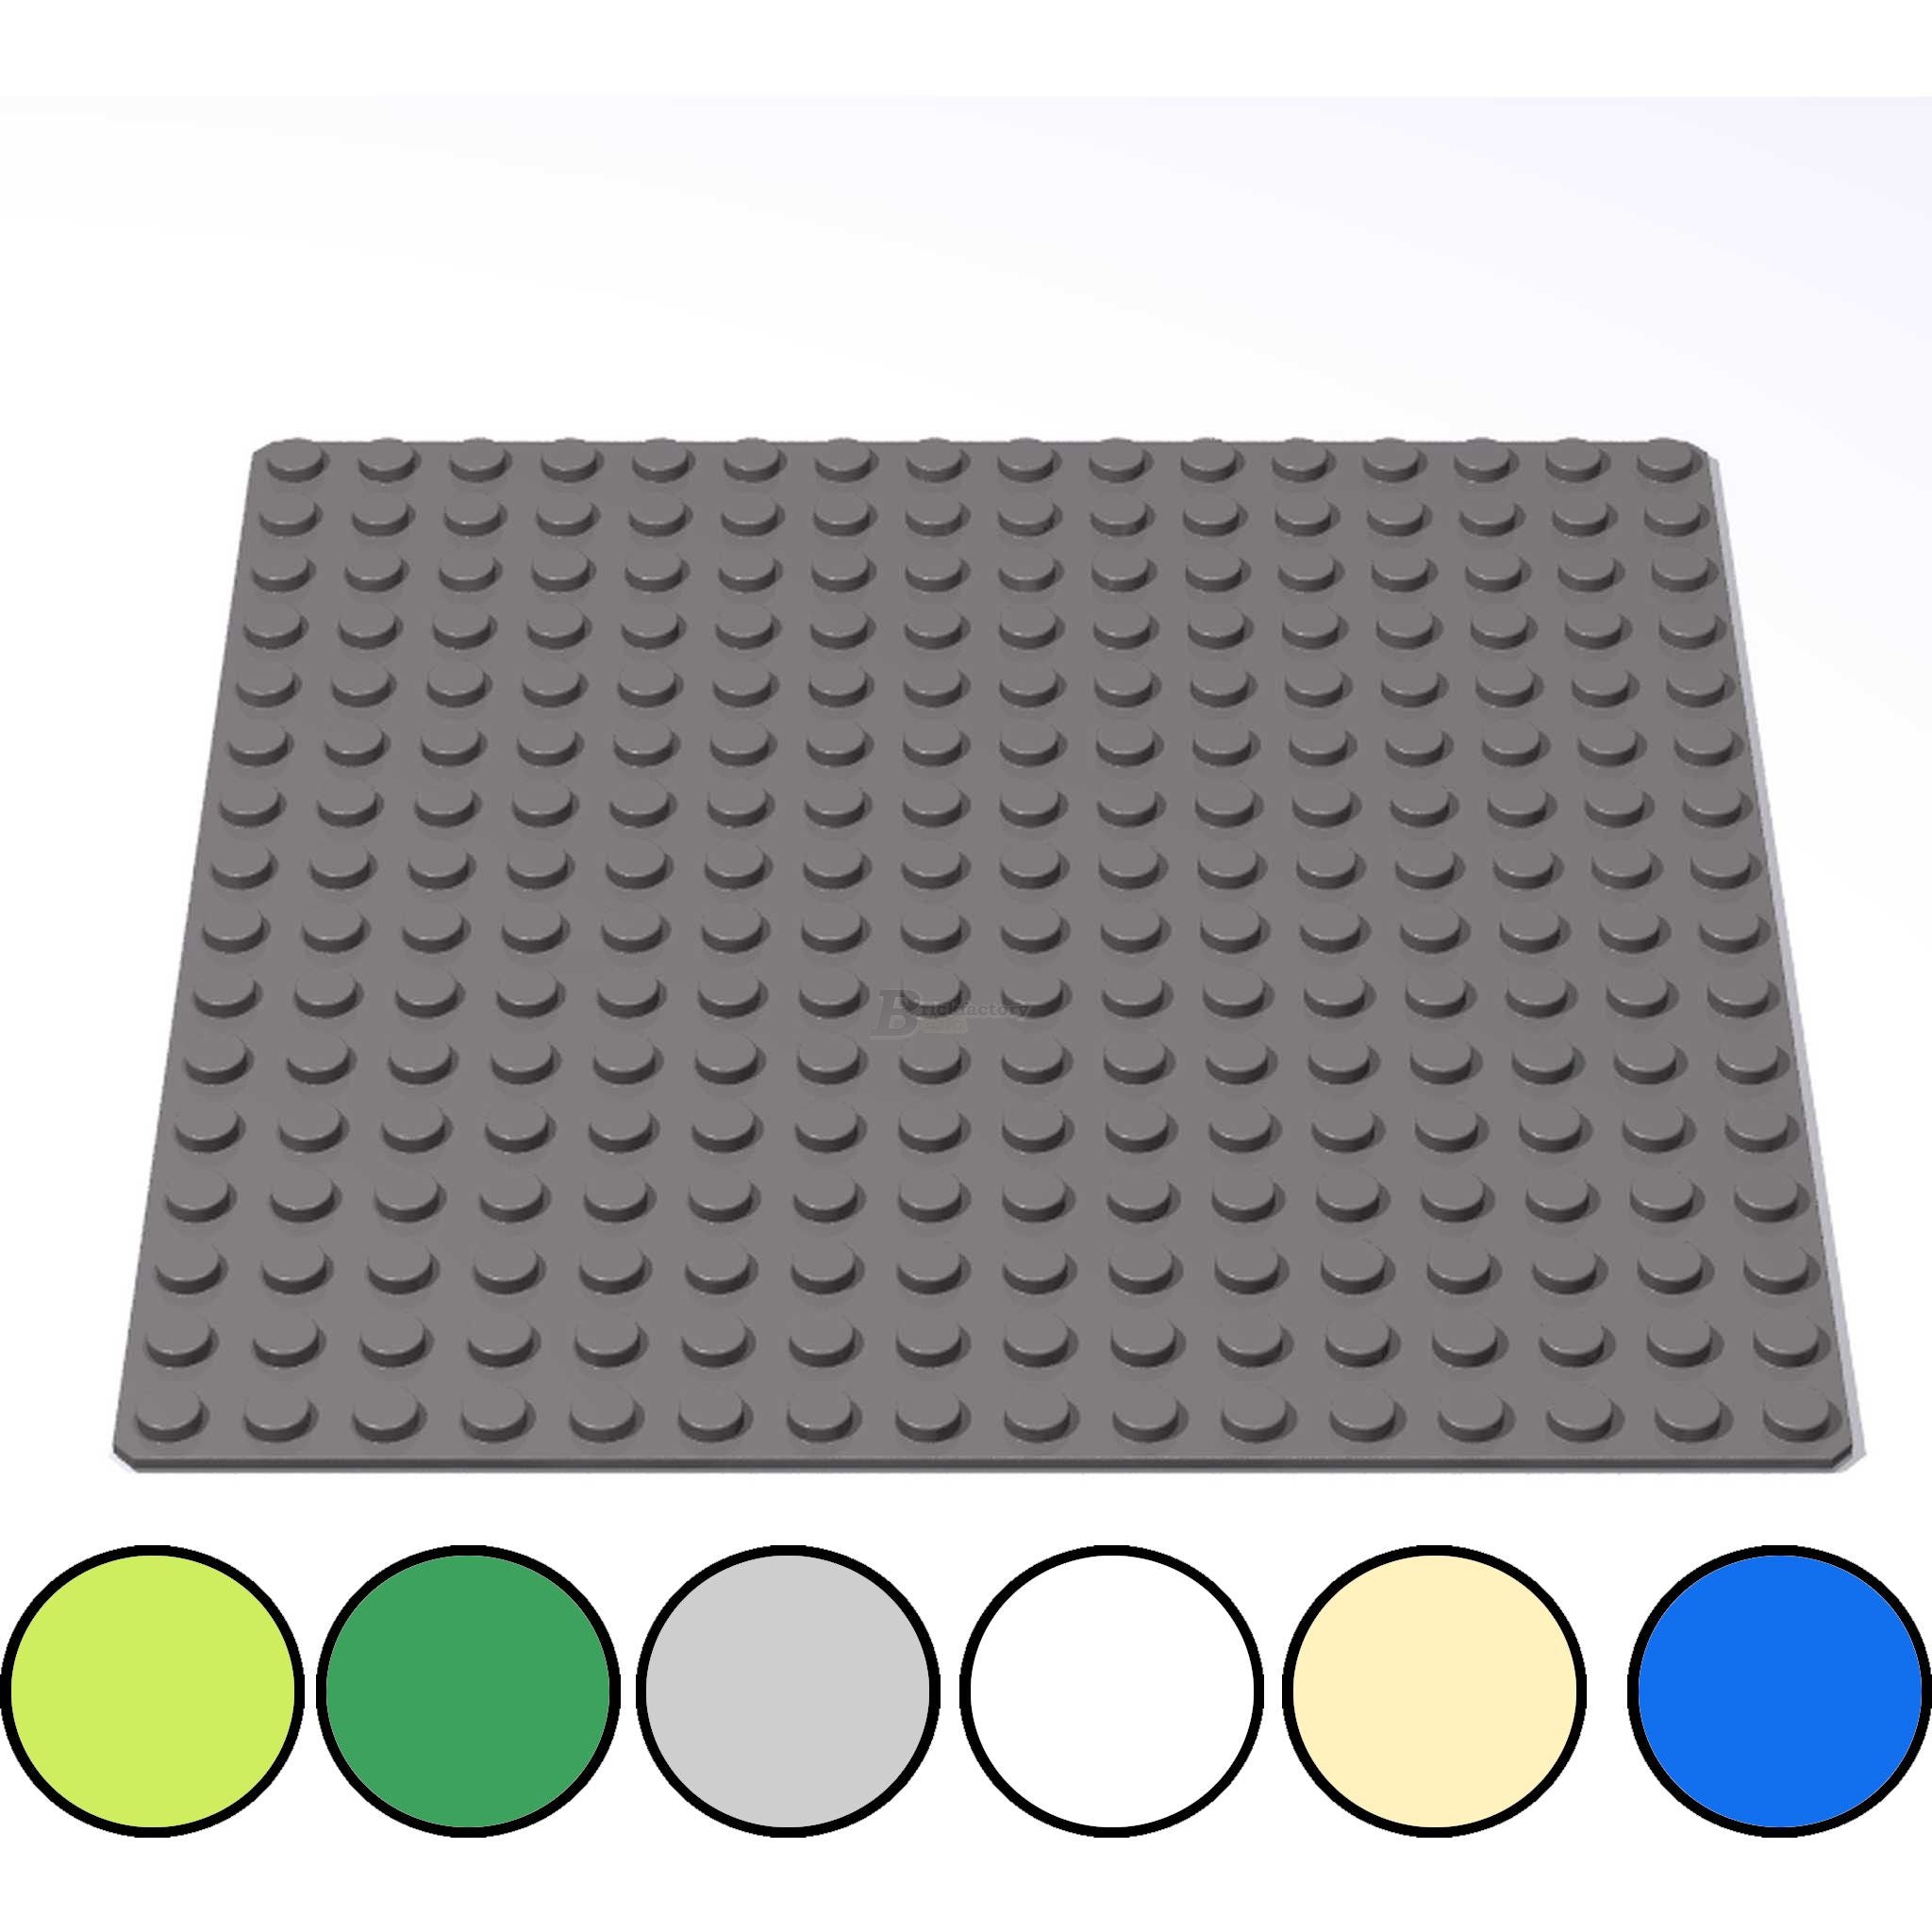 8802 - Grundplatte 16x16 Noppen, verschiedene Farben